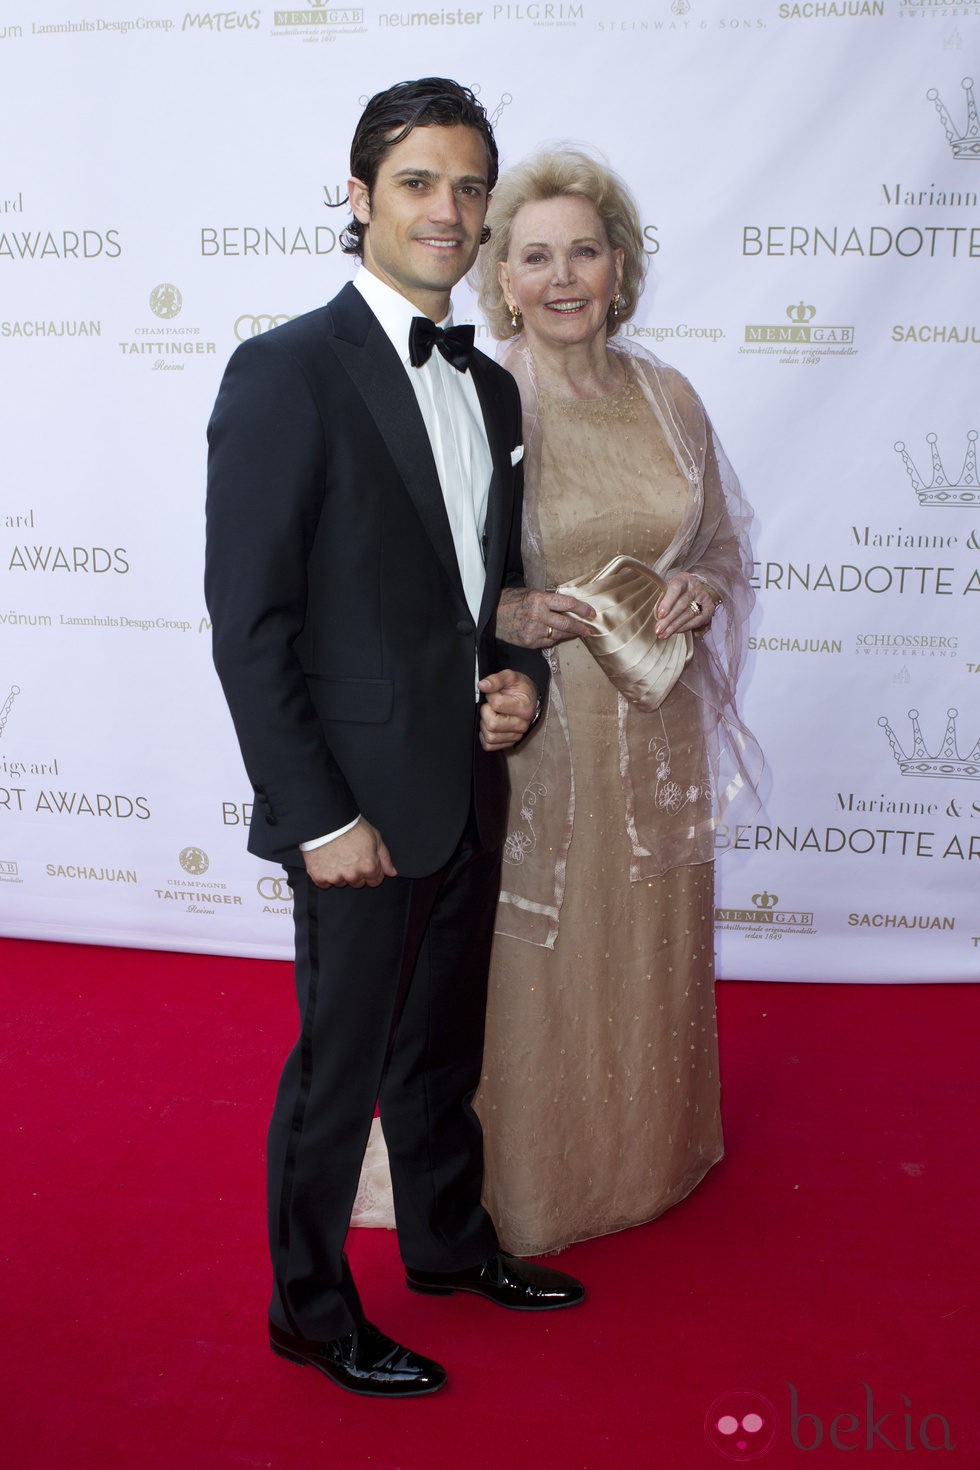 Carlos Felipe de Suecia y Marianne Bernardotte en los Premios Marianne & Sigvard Bernadotte